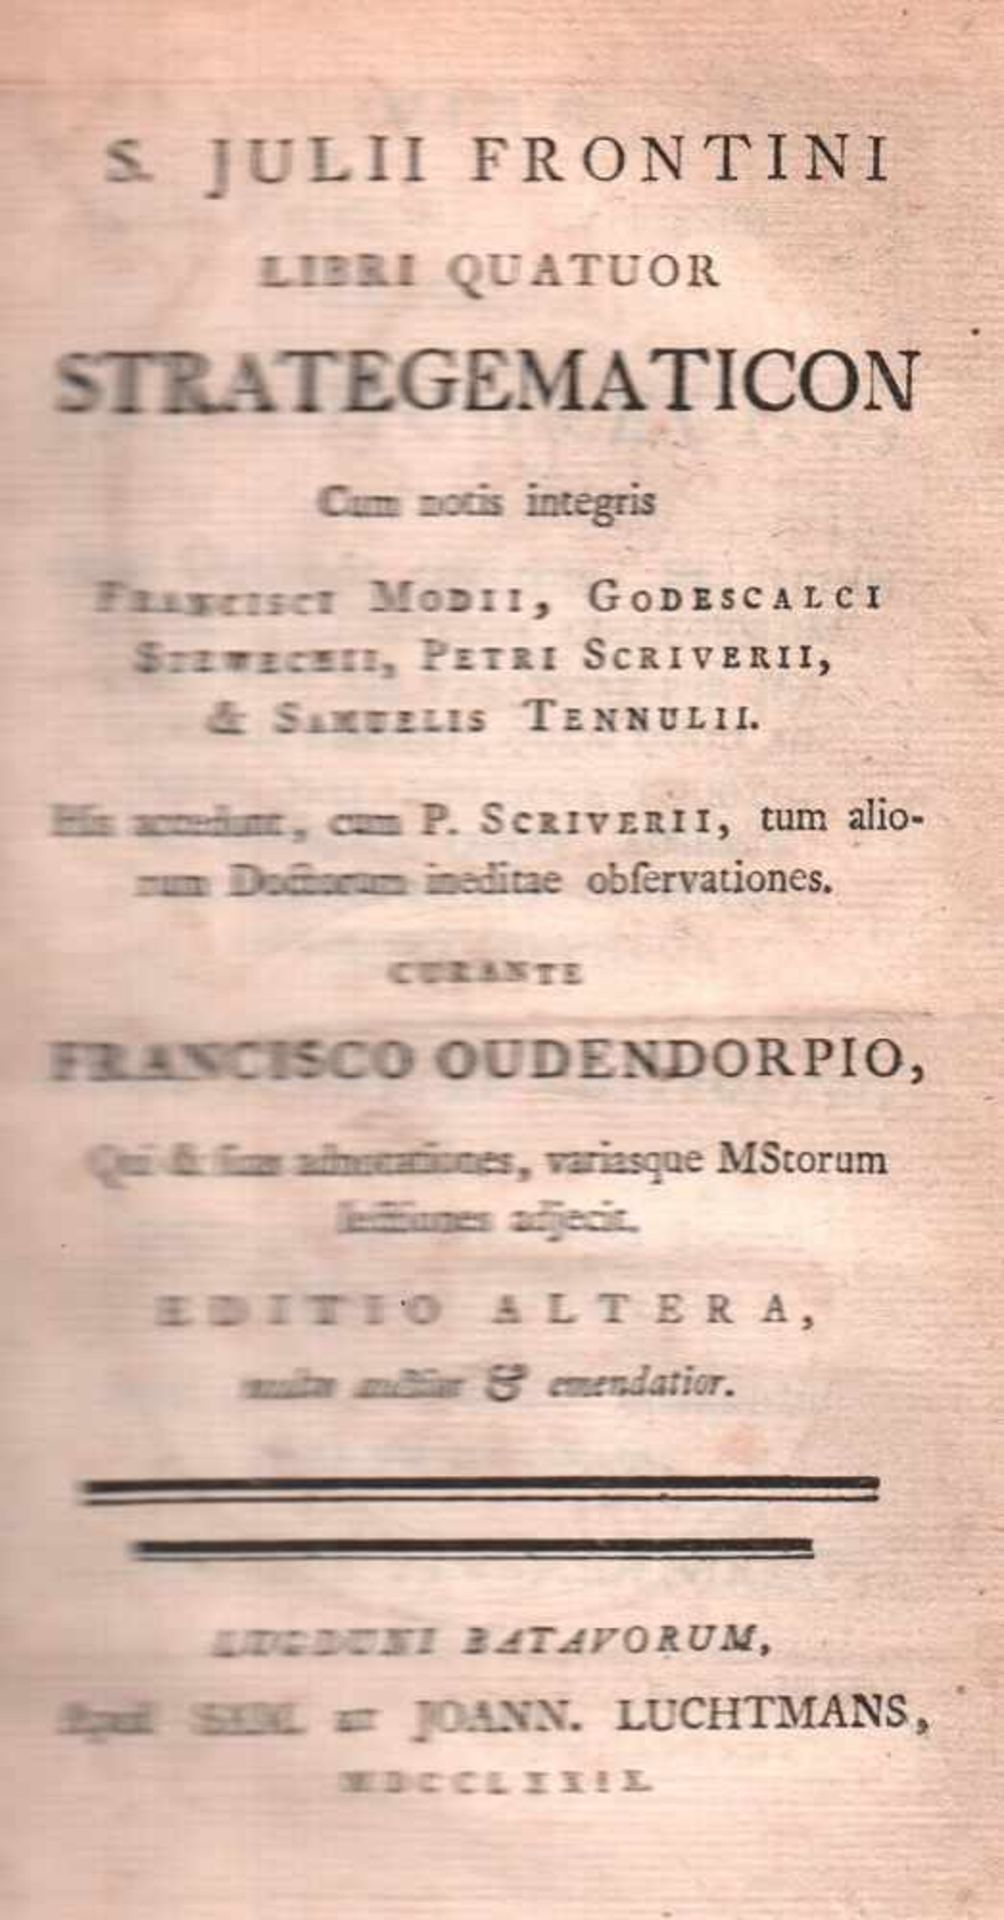 Frontinus, Sextus Julius.Libri quatuor strategematicon cum notis integris Francisci Modii,